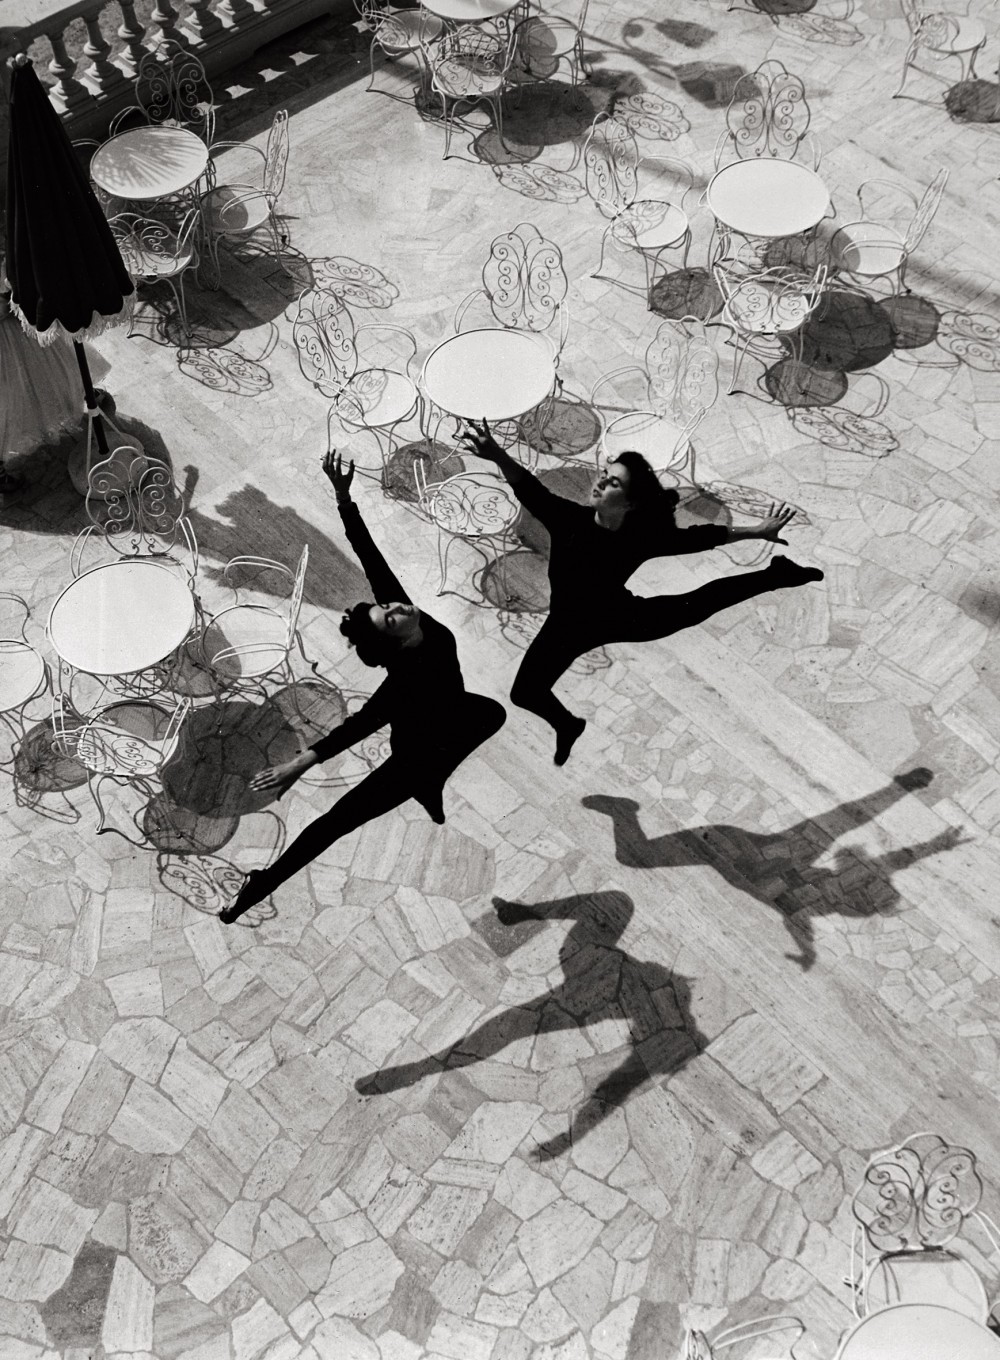 Балет, Римини, 1953. Фотограф Марио Де Бьязи